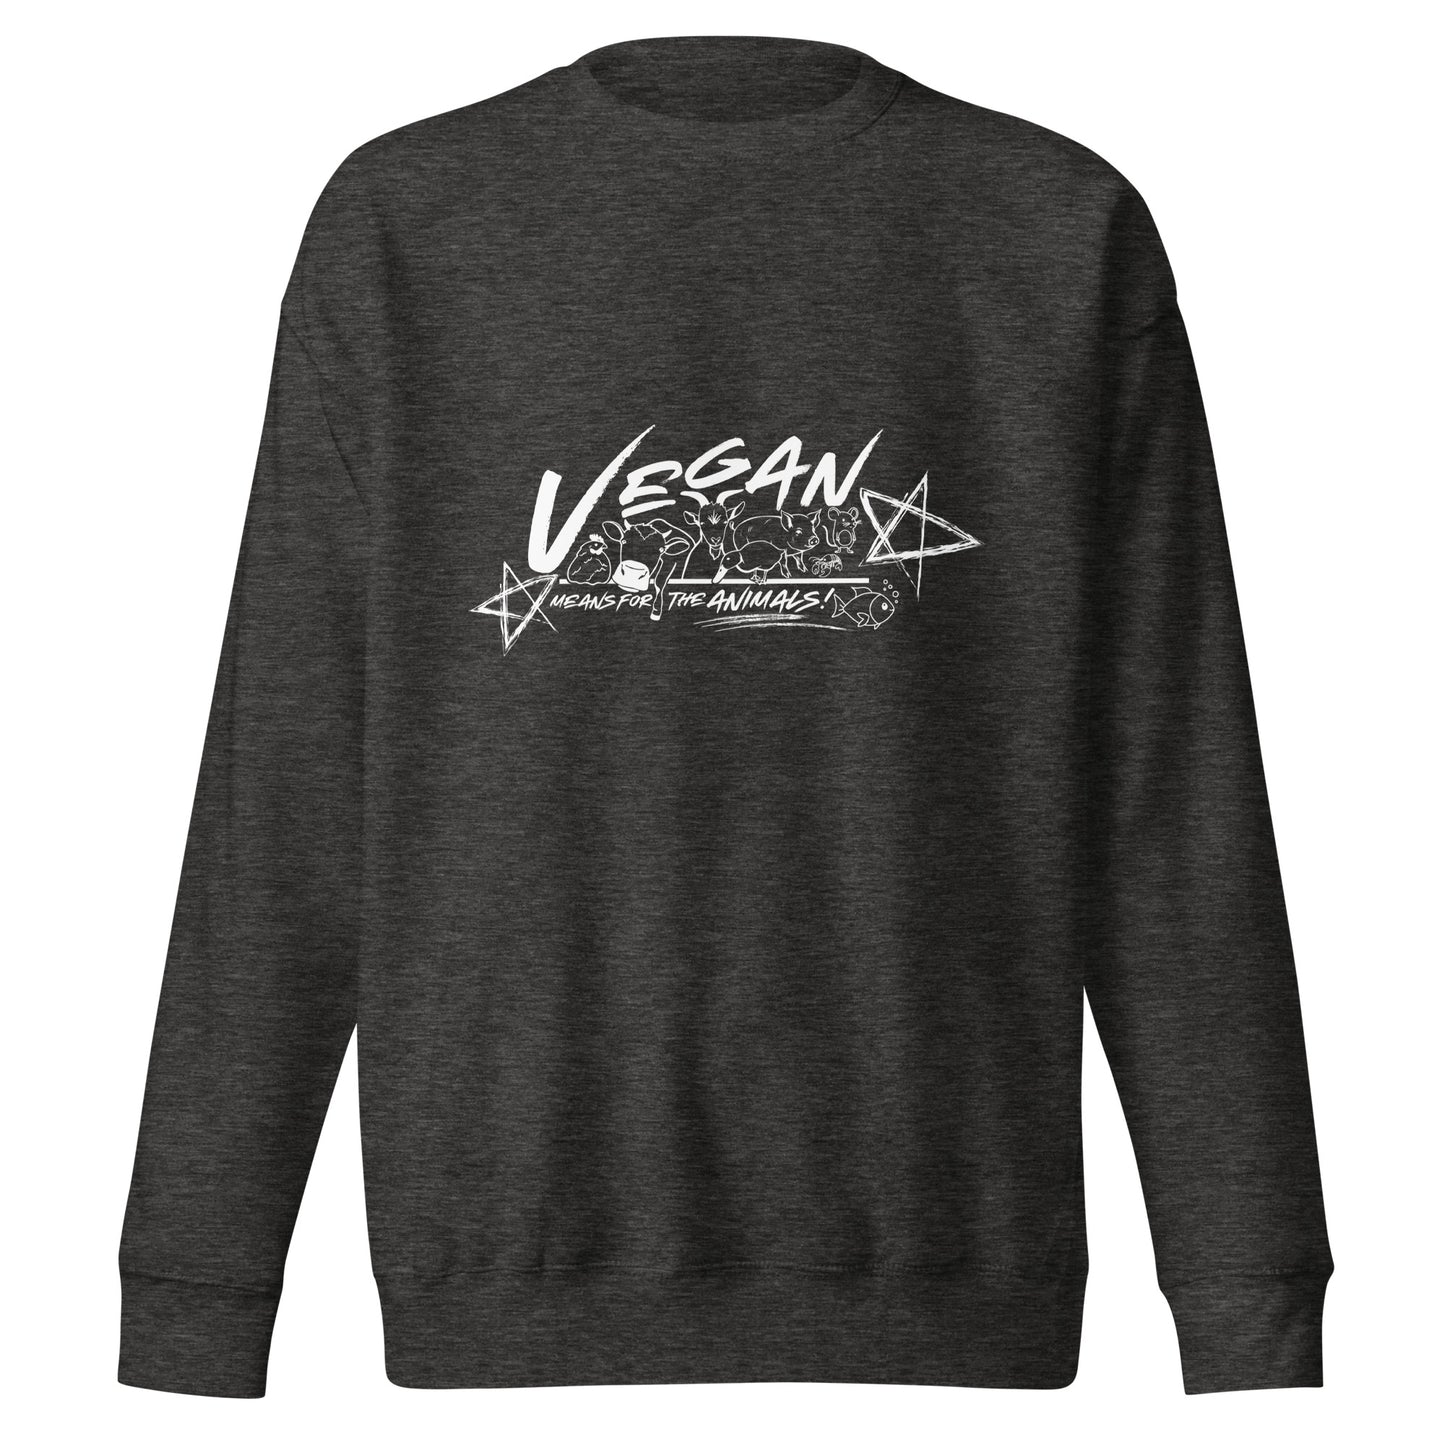 VEGAN " Means For The ANIMALS! " Unisex Premium Sweatshirt